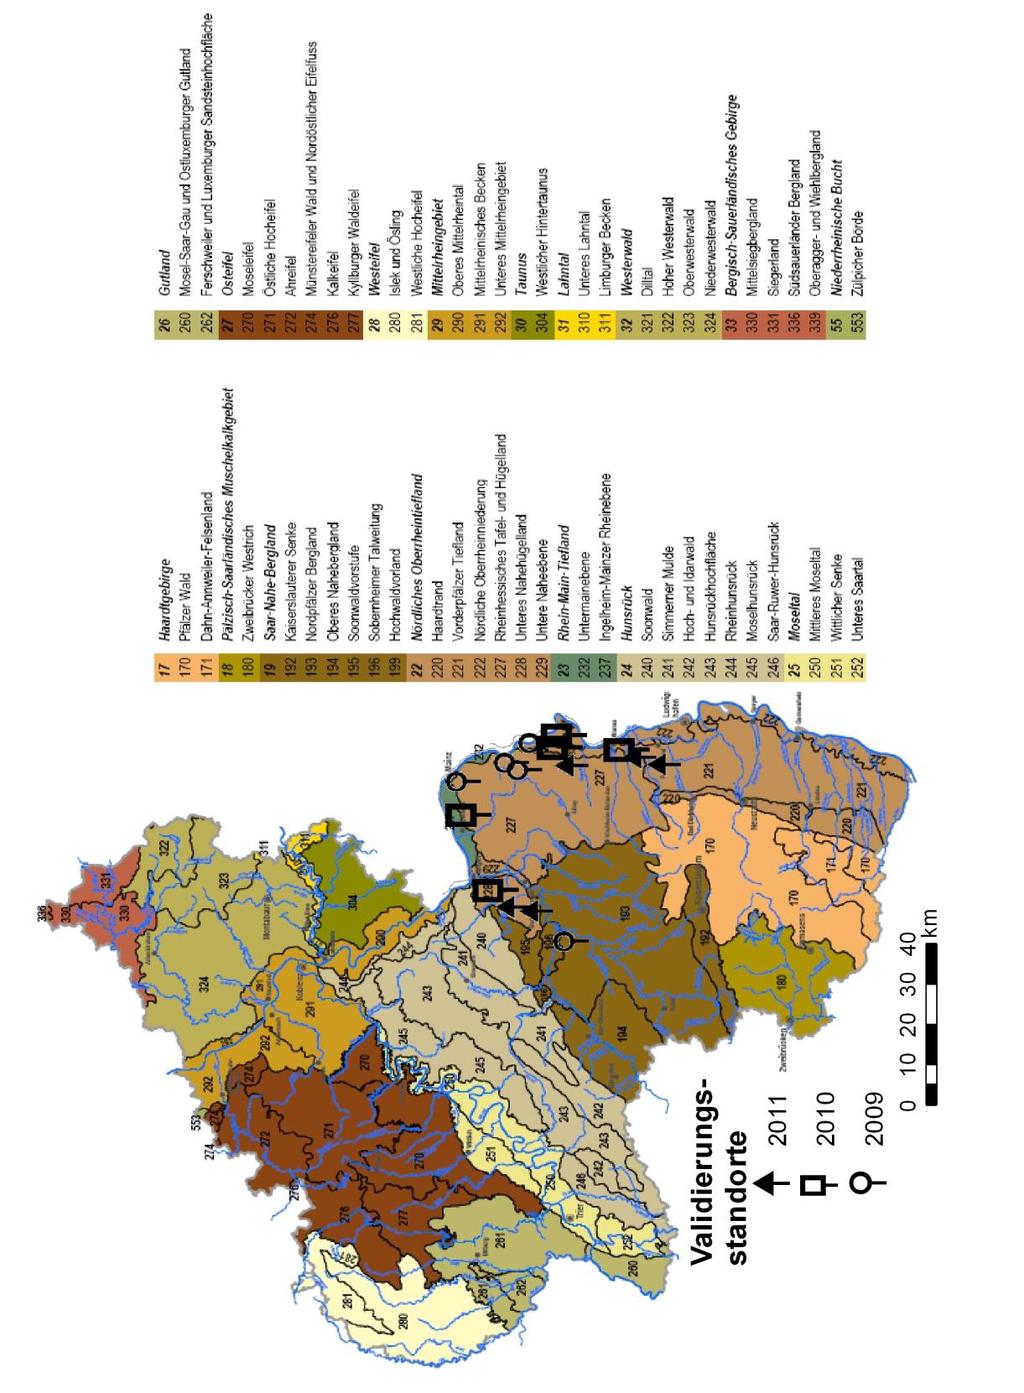 Abbildung 9: Naturräumliche Gliederung von Rheinland-Pfalz basierend auf der Geographischen Landesaufnahme 1:200.